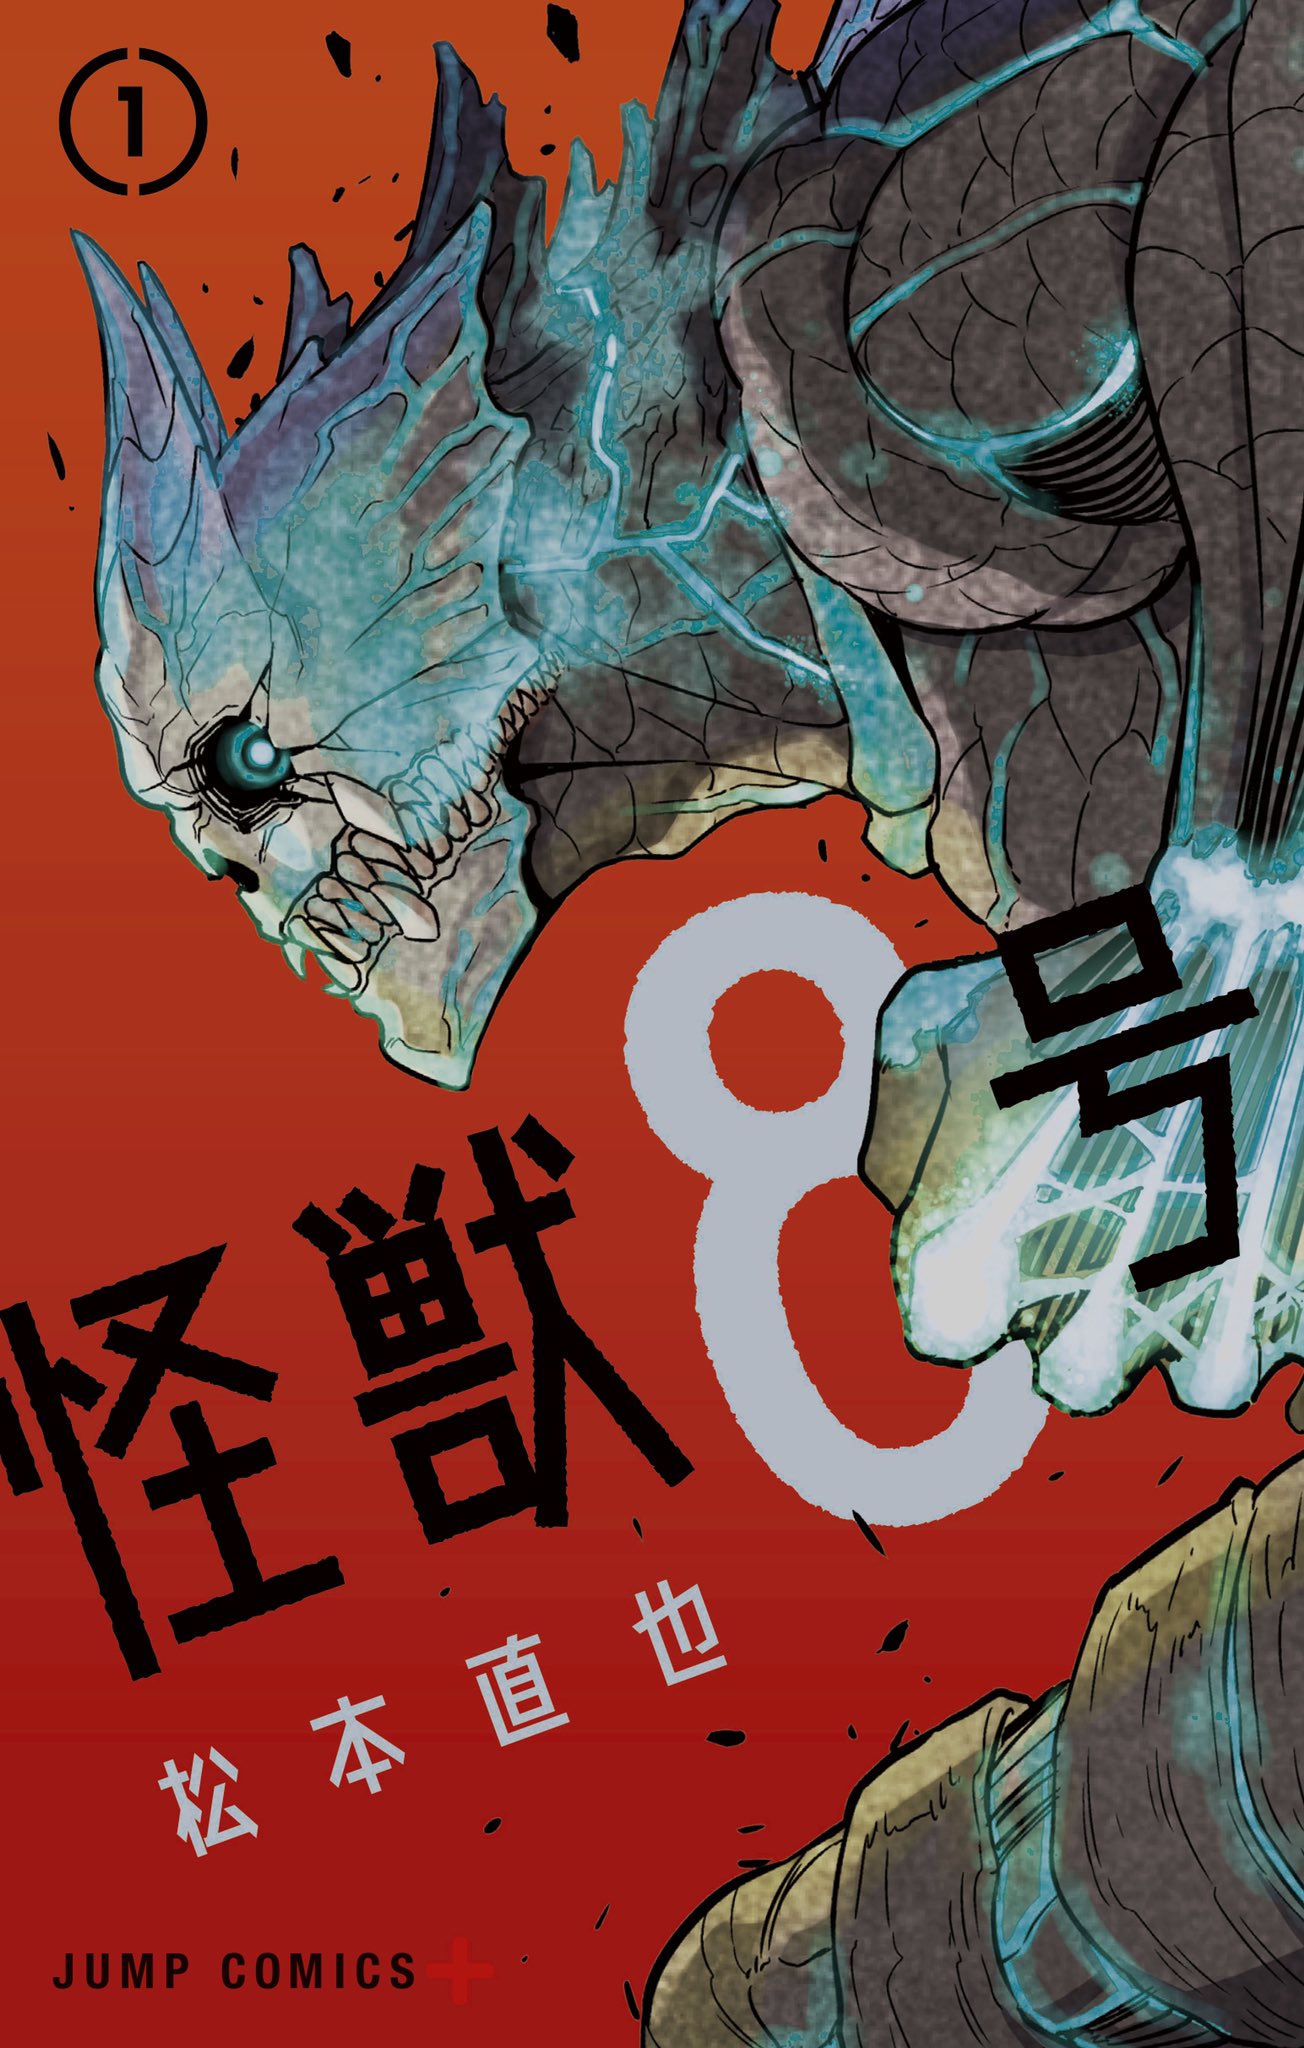 松本直也「怪獣8号」第1巻 2020年12月4日発売!